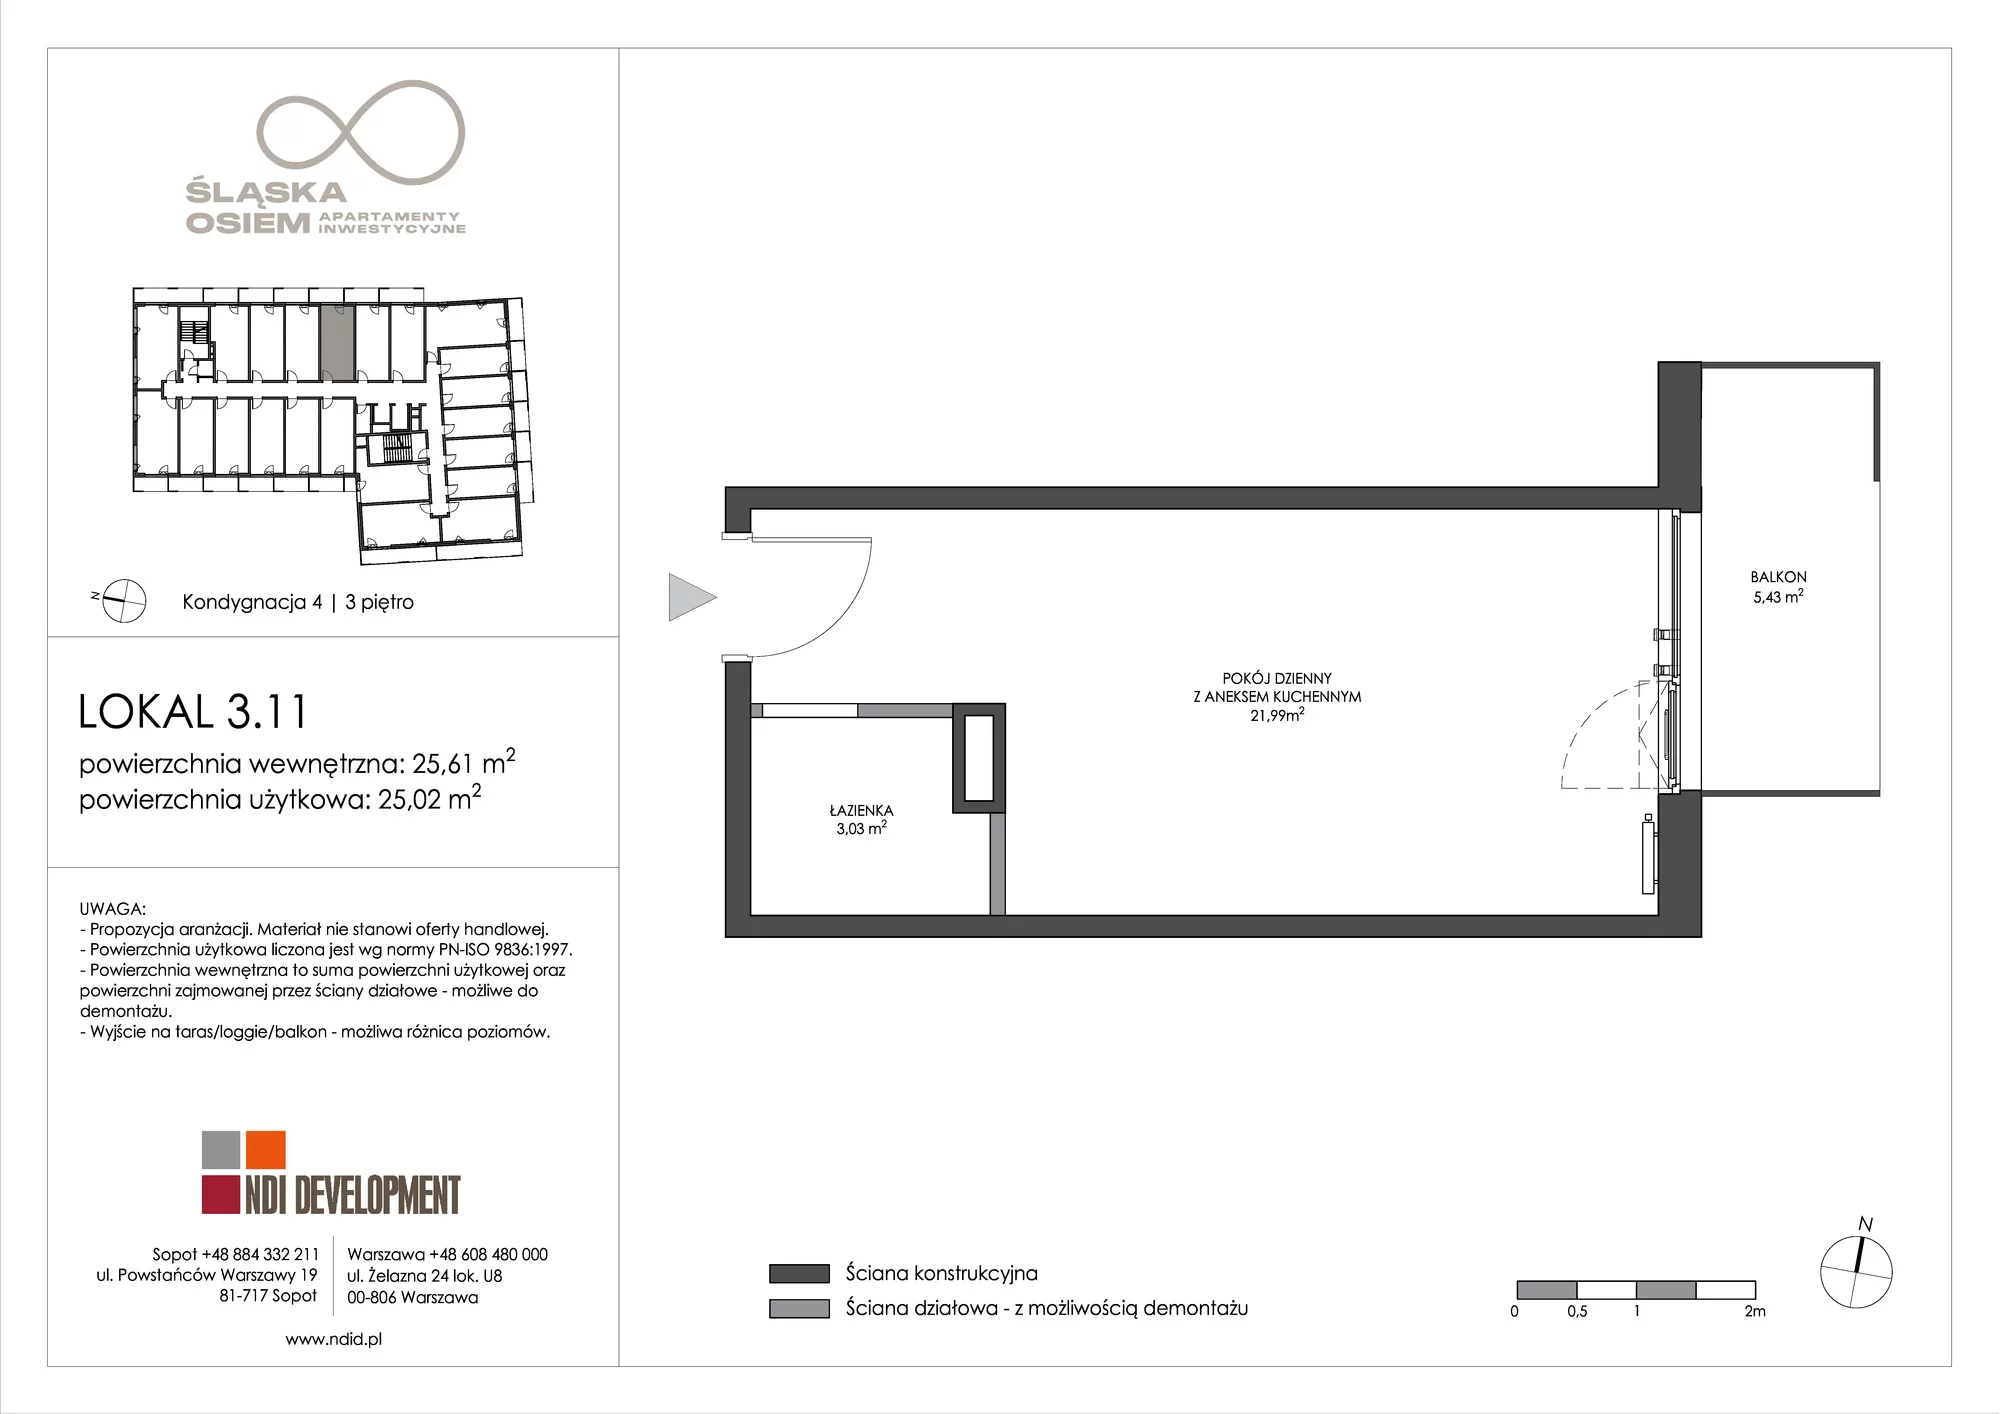 Apartament inwestycyjny 25,61 m², piętro 3, oferta nr 3.11, Śląska Osiem, Gdańsk, Przymorze, ul. Śląska 8